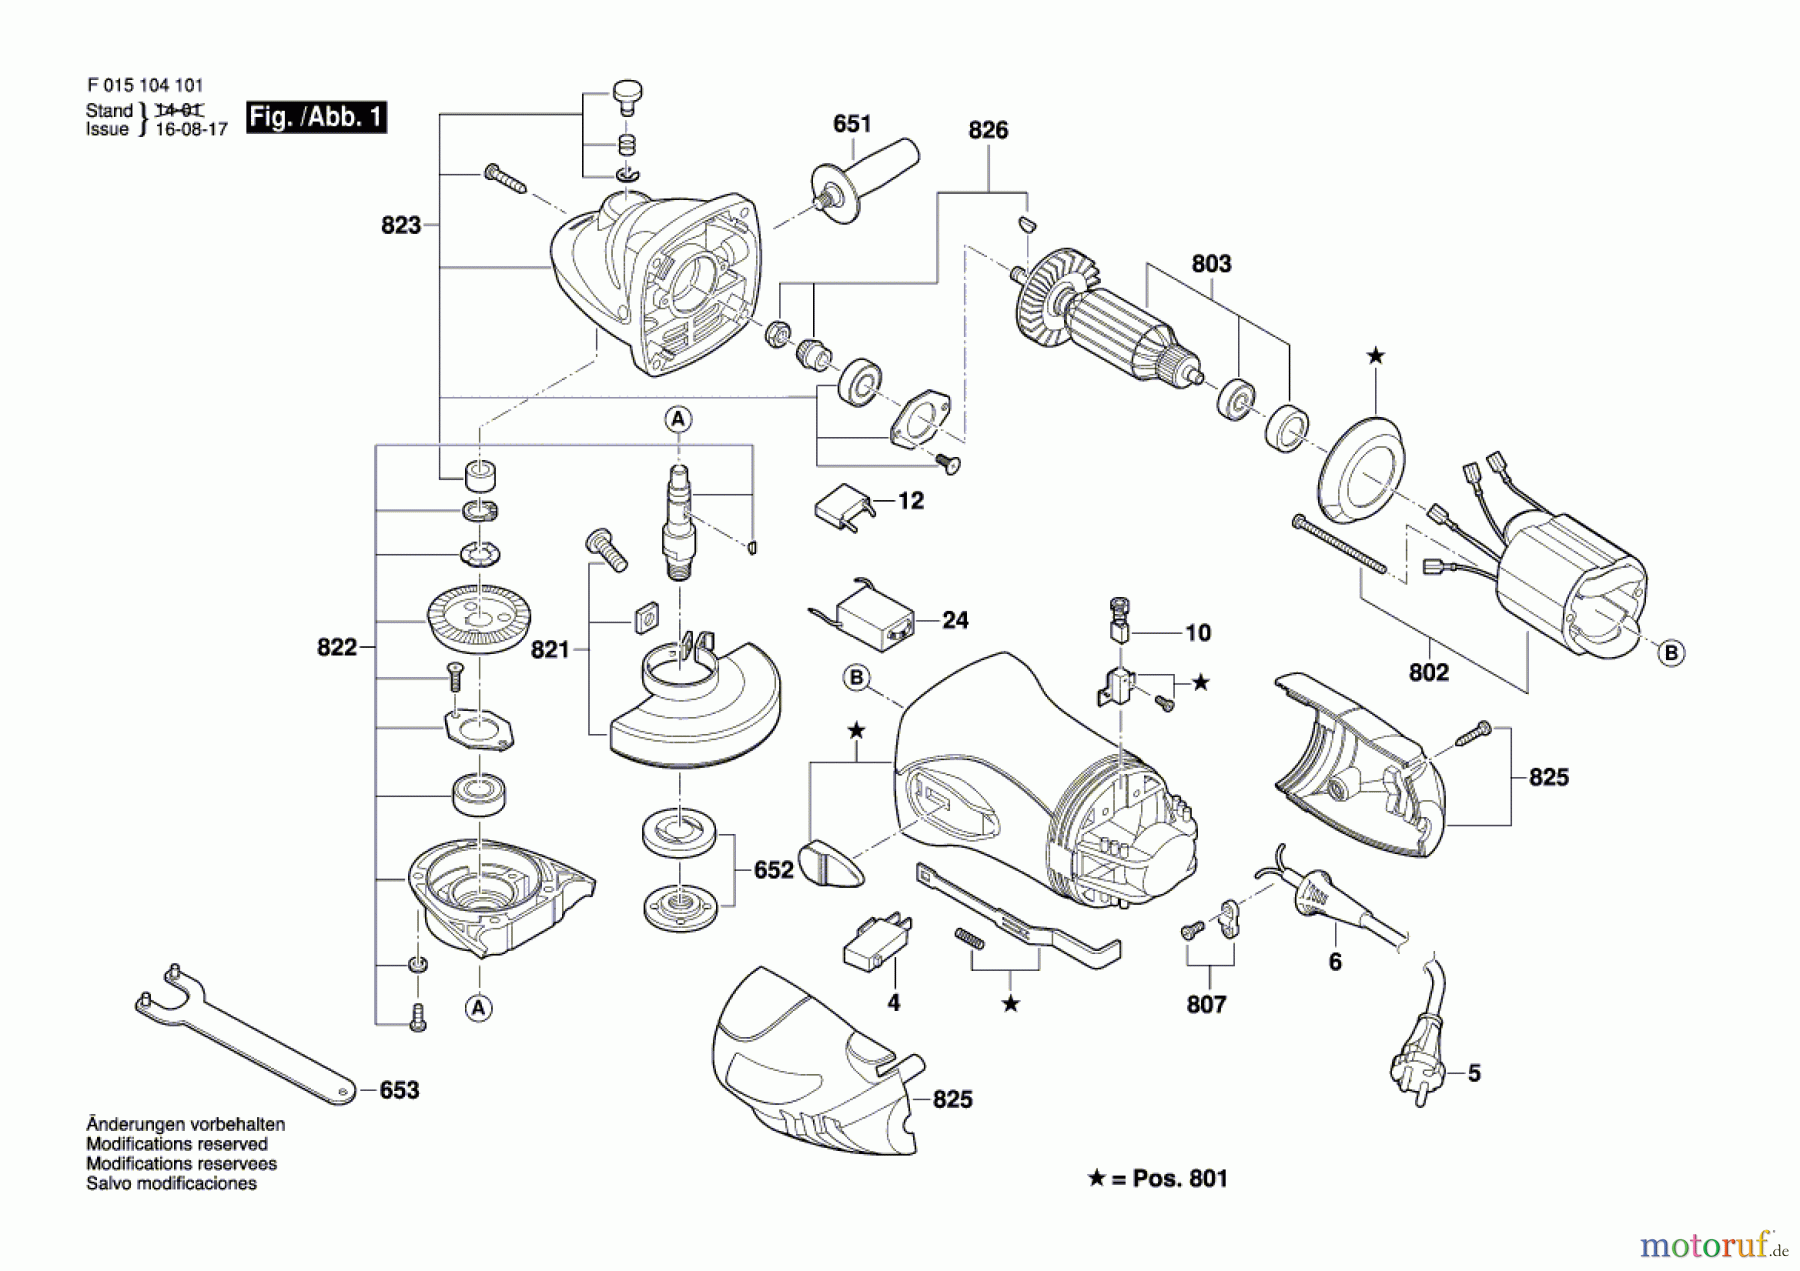  Bosch Werkzeug Winkelschleifer 1041 Seite 1